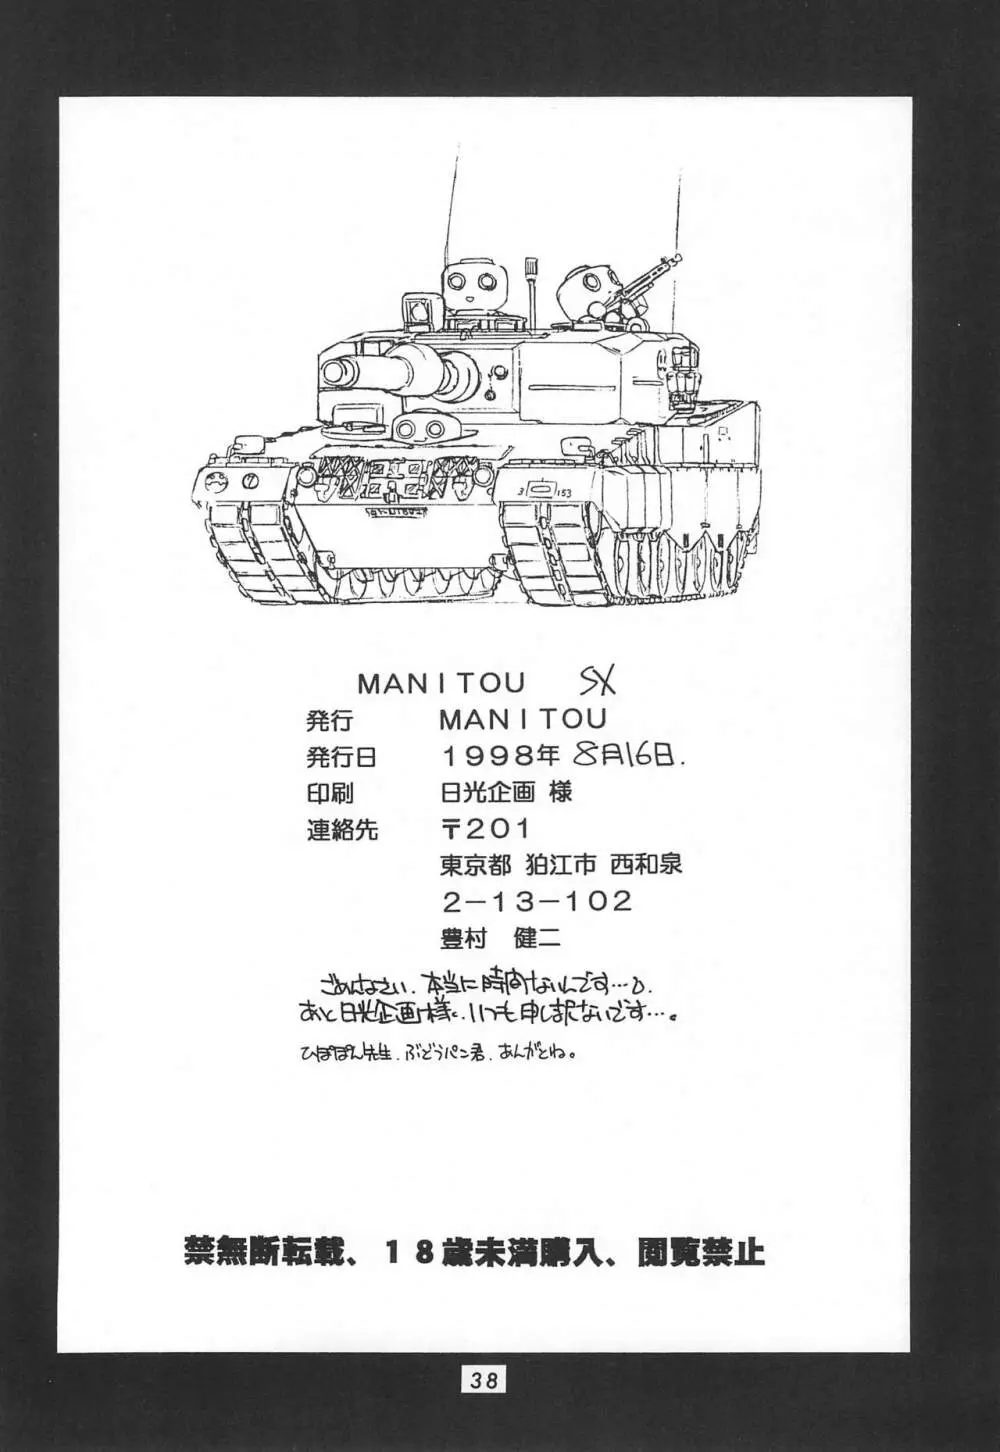 MANITOU SX 40ページ